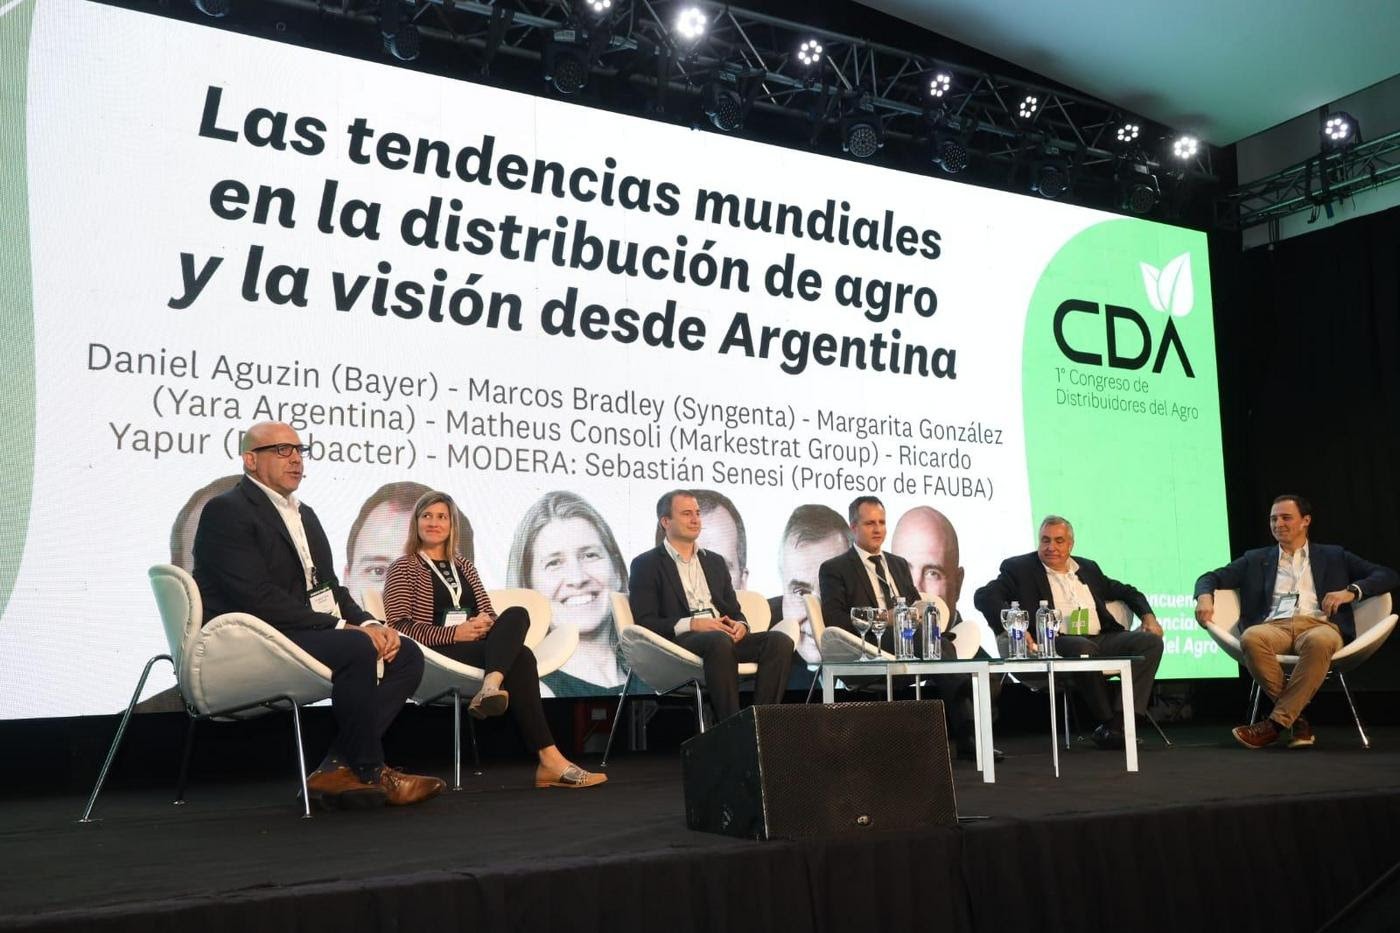 Mañana se realiza el segundo Congreso de distribuidores del Agro CDA